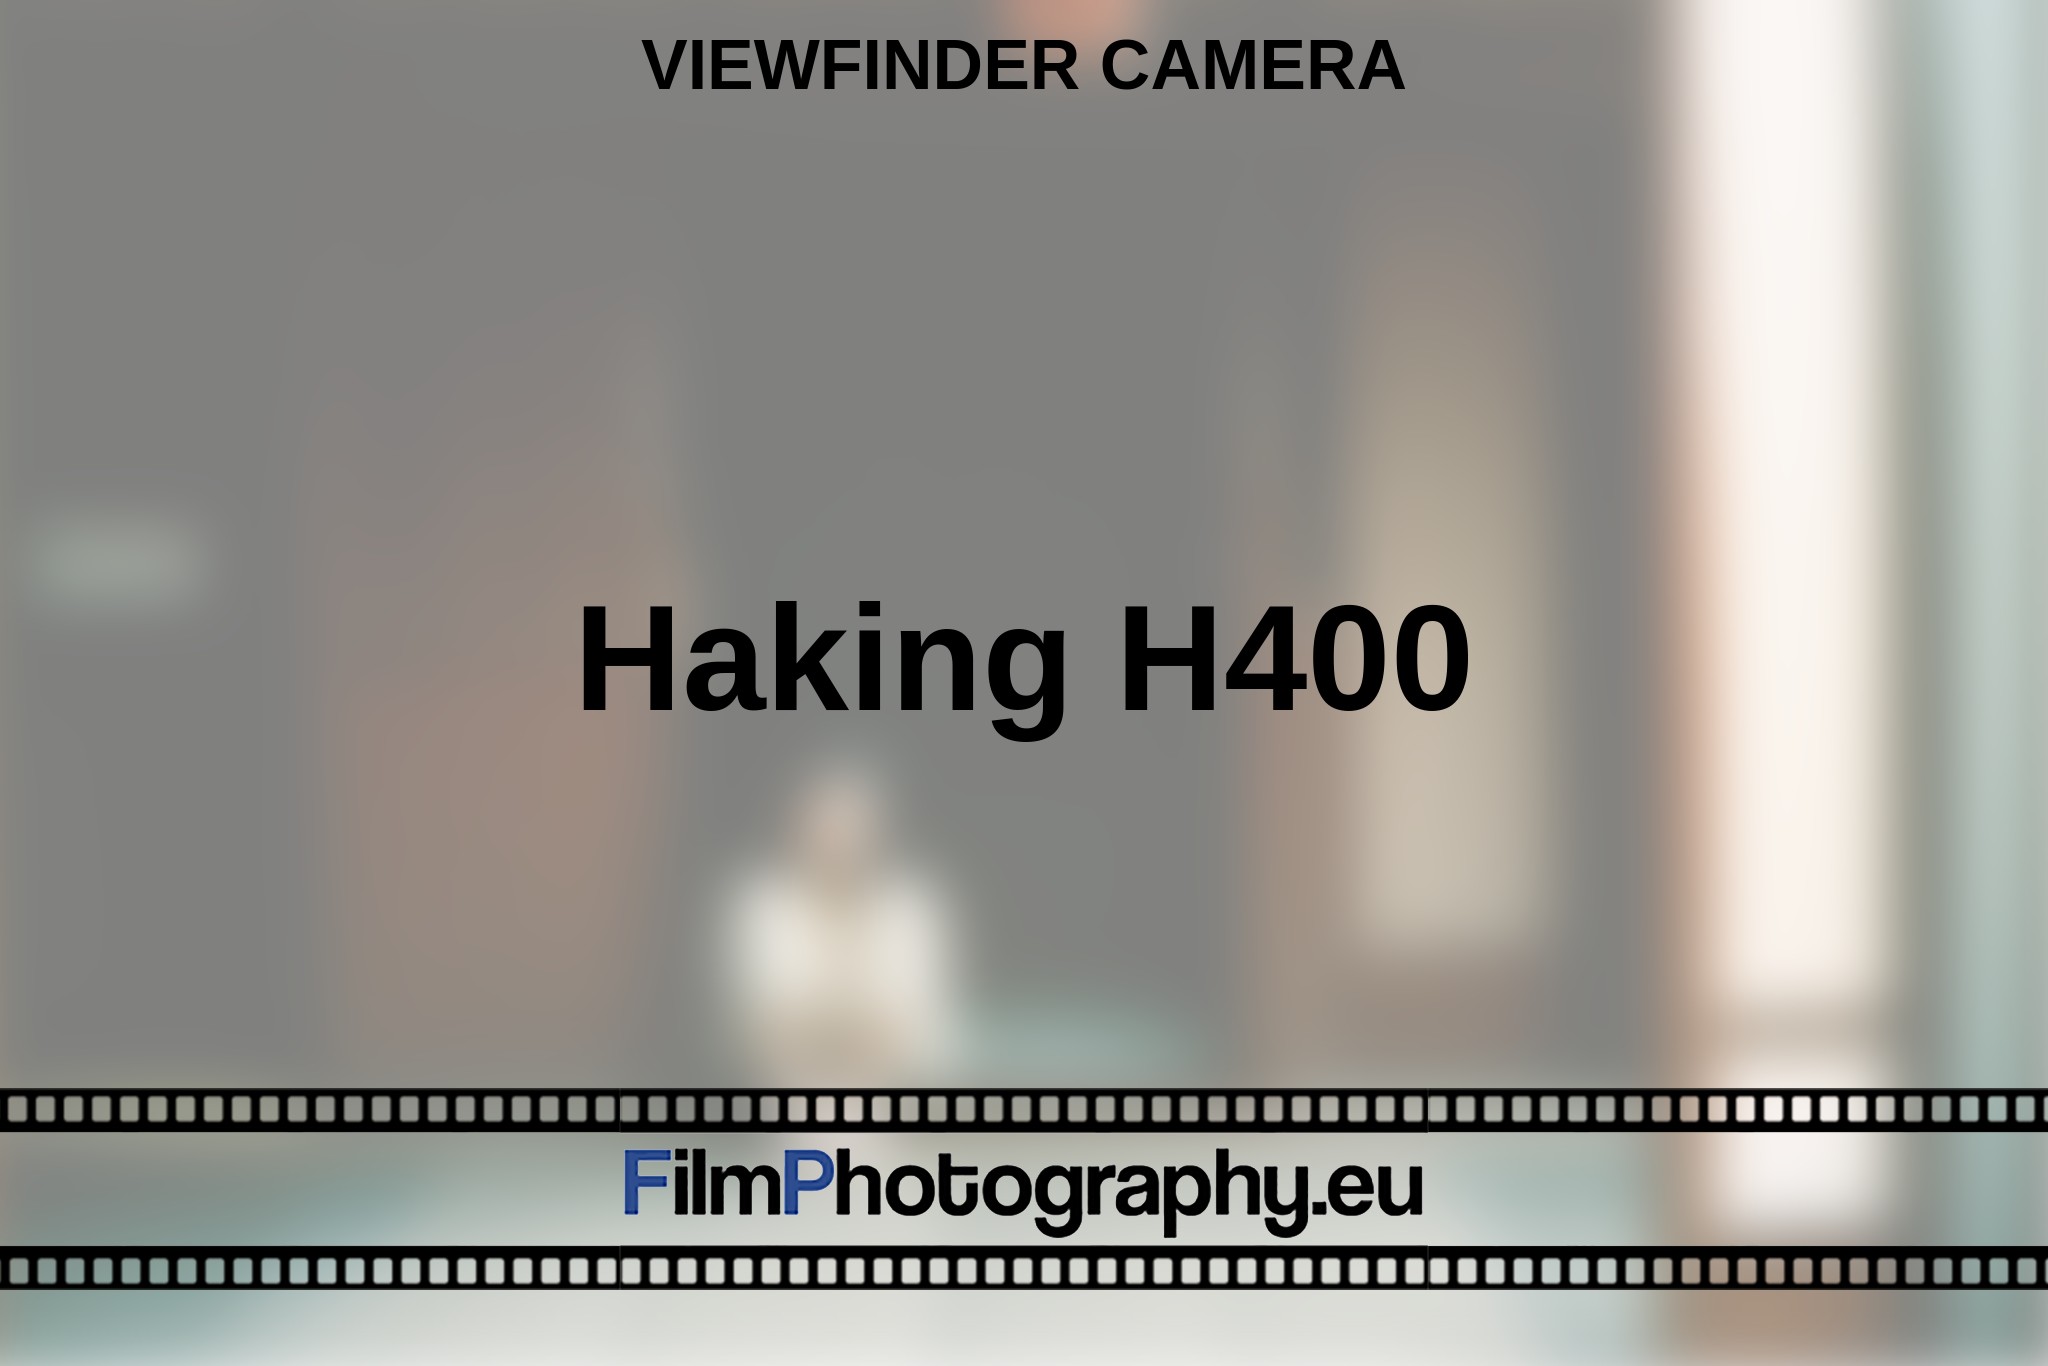 haking-h400-viewfinder-camera-en-bnv.jpg